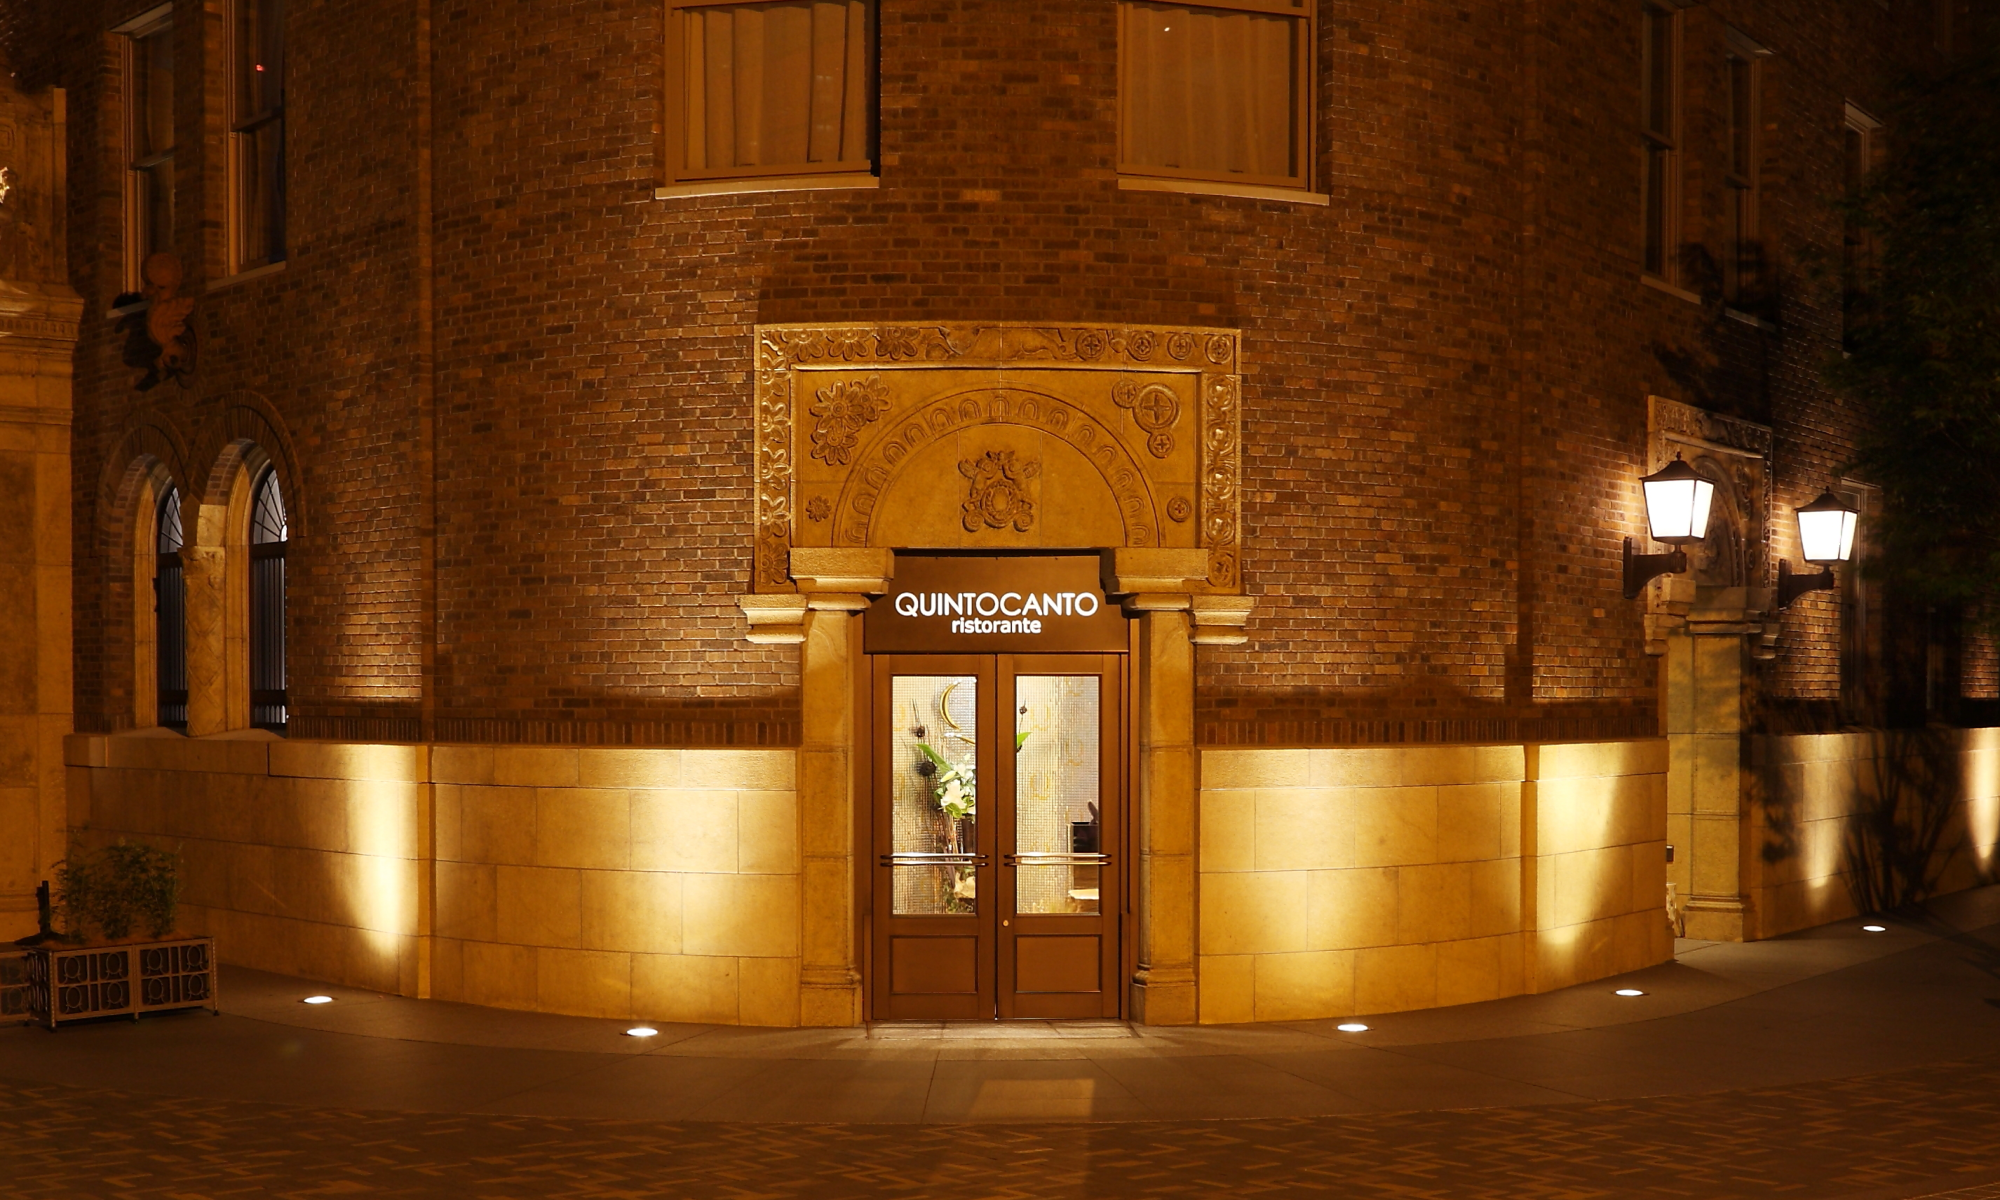 ネオ・ロマネスク様式の旧ダイビルの意匠を残すダイビル本館の１階にQUINTOCANTOはある。